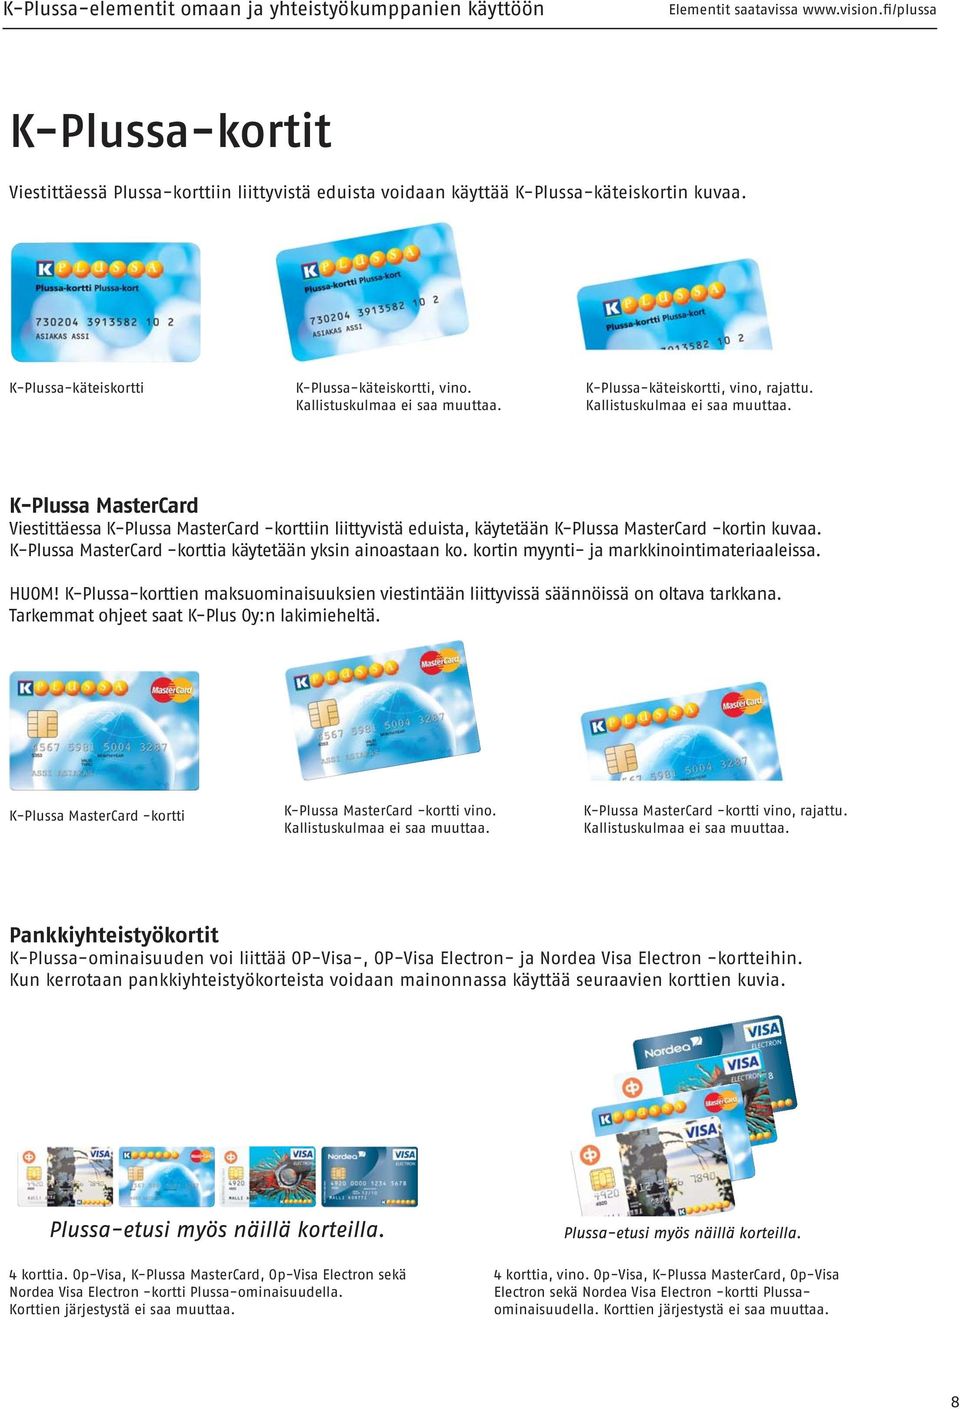 K-Plussa MasterCard -korttia käytetään yksin ainoastaan ko. kortin myynti- ja markkinointimateriaaleissa. HUOM!